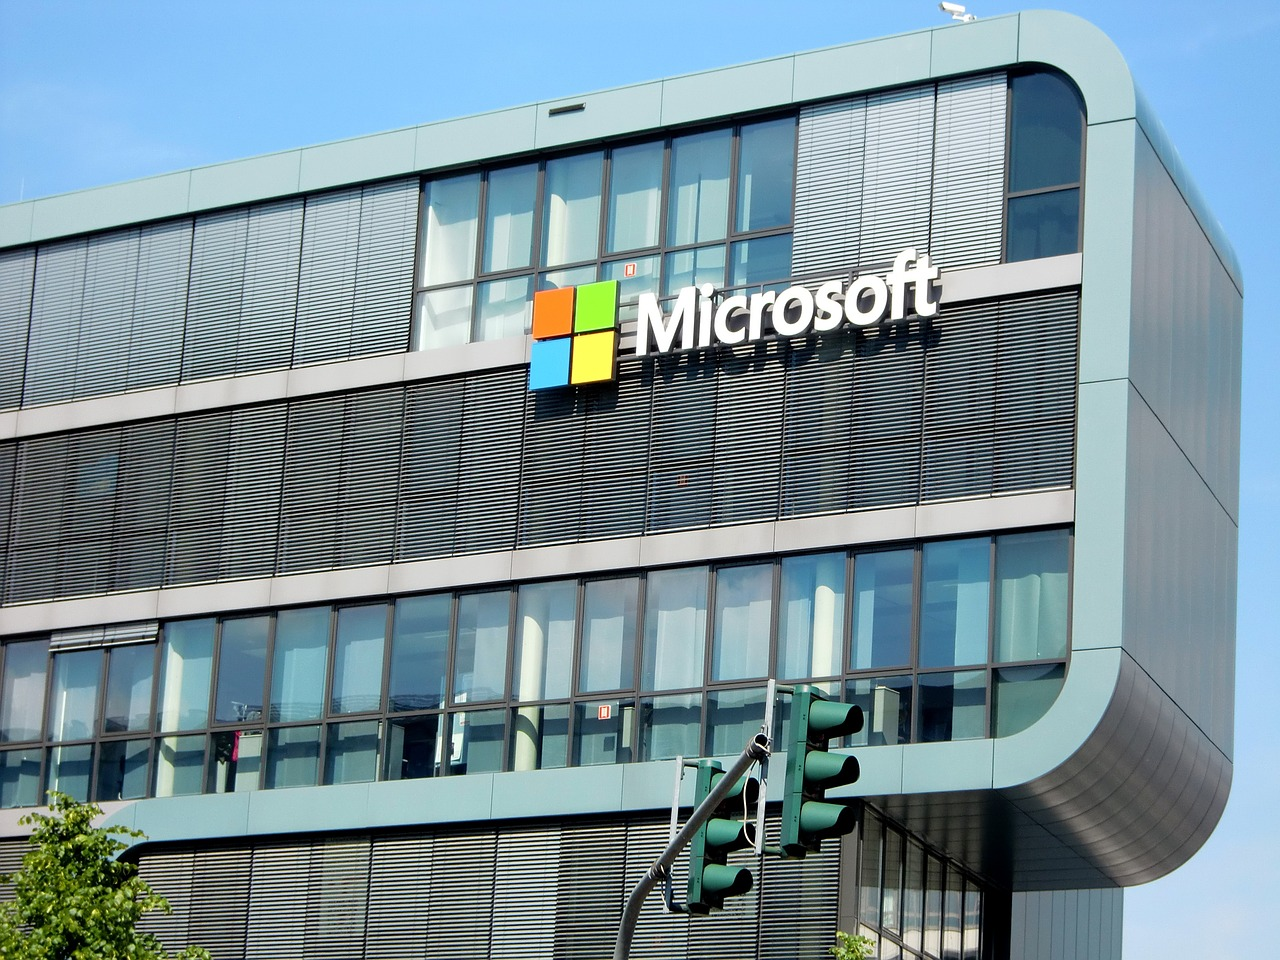 Budynek Microsoft na tle błękitnego nieba